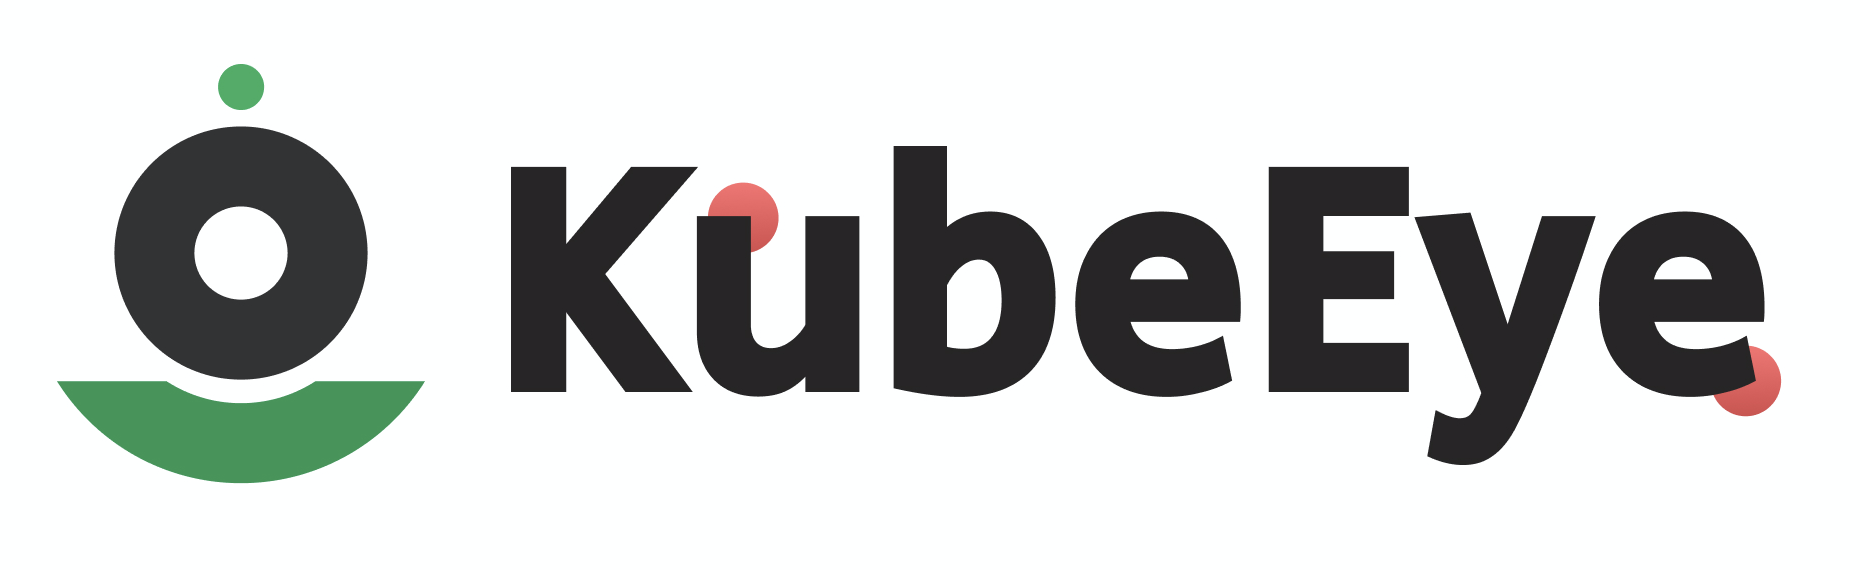 kubeeye-logo